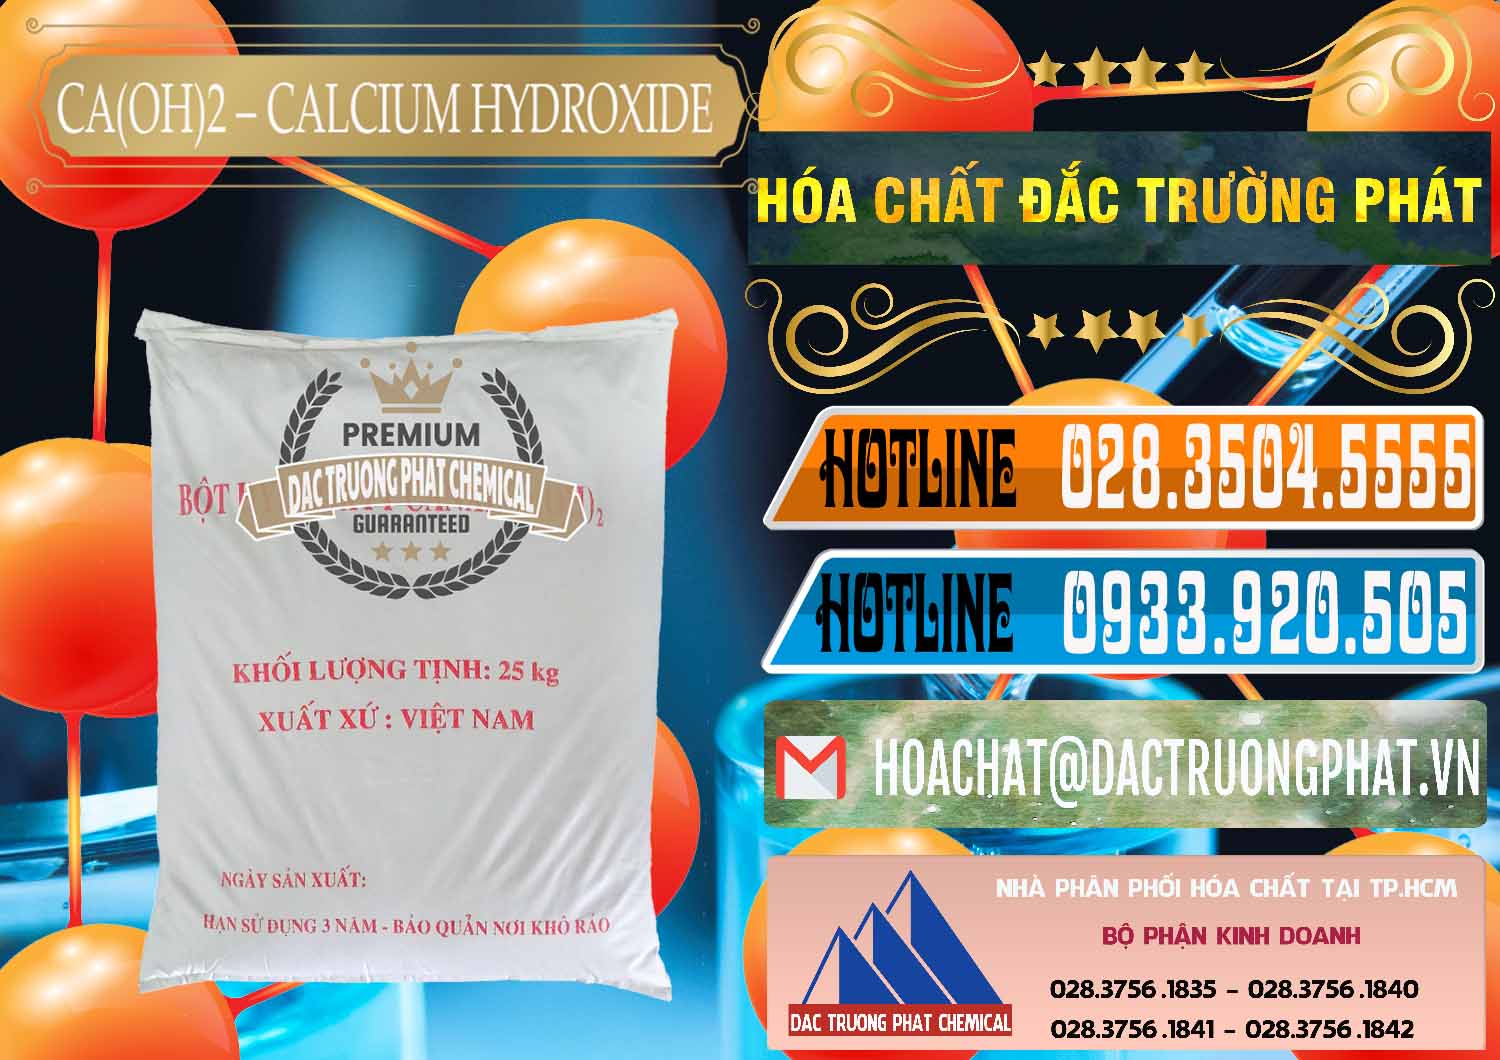 Đơn vị cung cấp ( bán ) Ca(OH)2 - Calcium Hydroxide Việt Nam - 0186 - Nơi chuyên kinh doanh - phân phối hóa chất tại TP.HCM - stmp.net